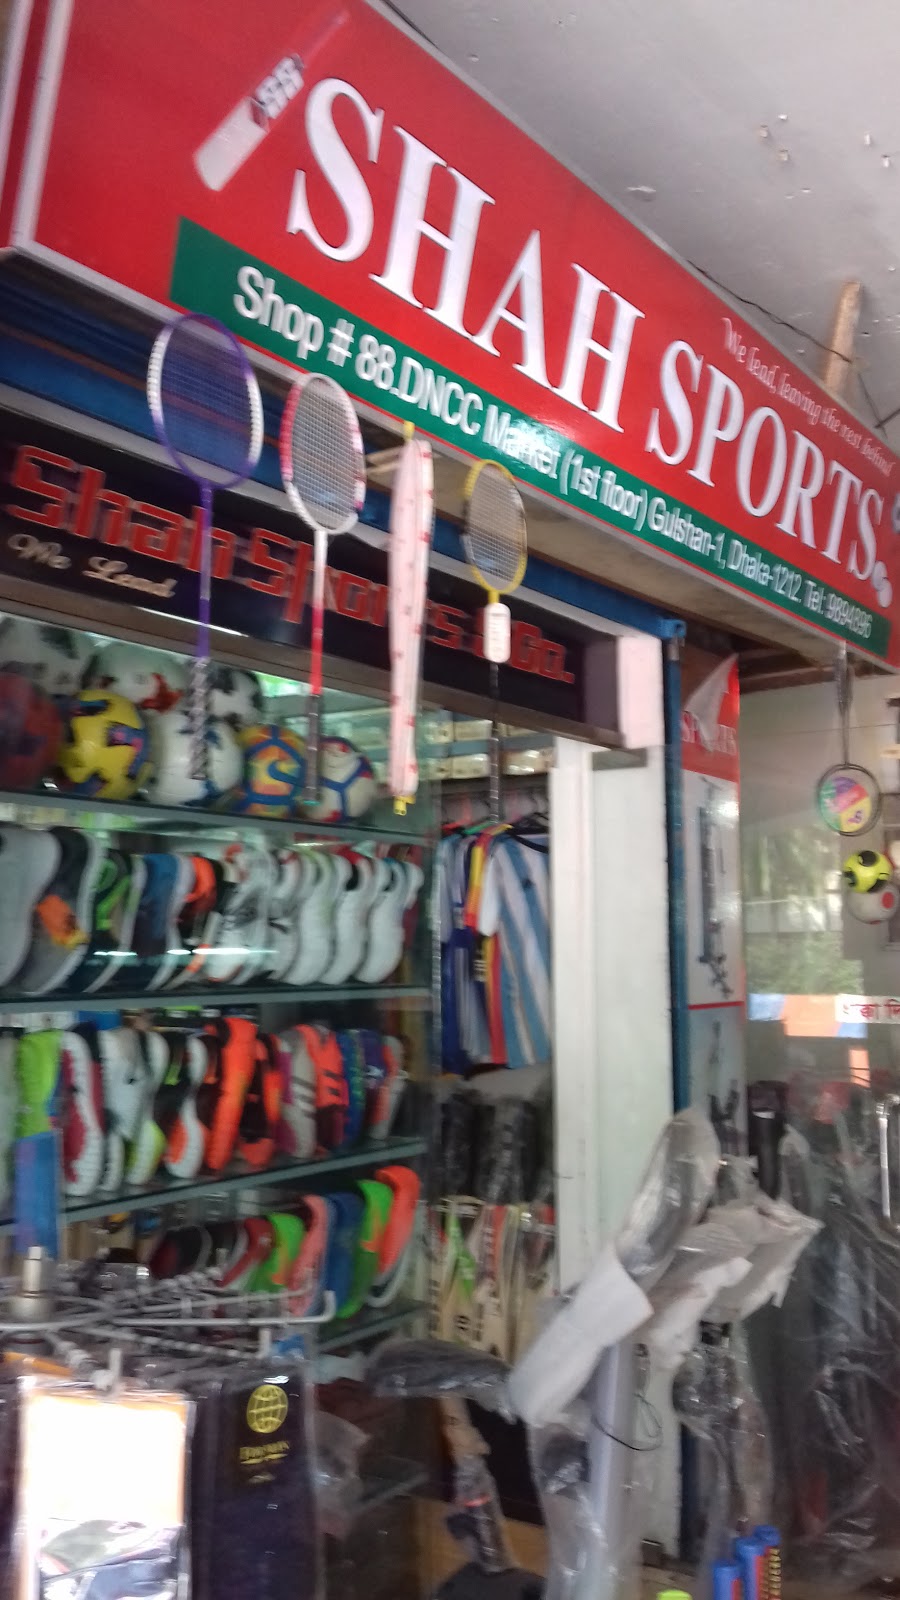 Shah Sports